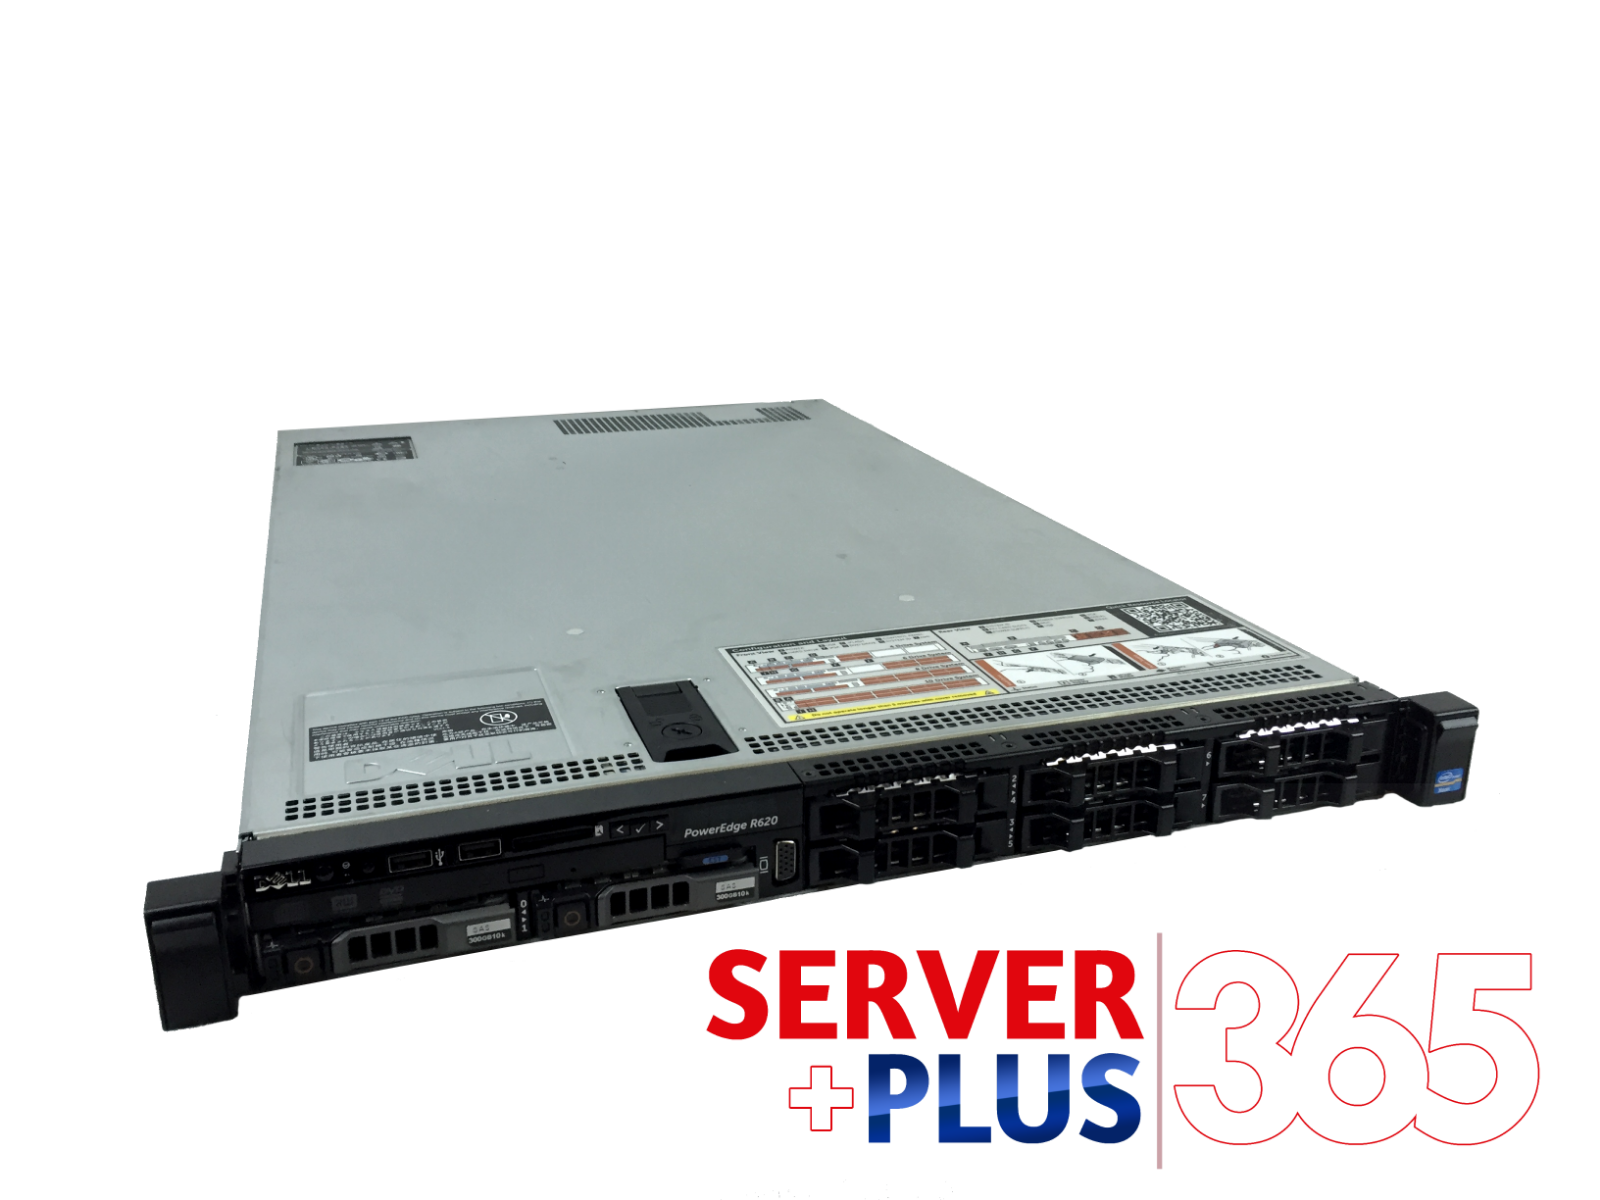 CTO Dell PowerEdge R620 Server, 2x E5-26XX V1 CPU, 32GB to 256GB RAM, RAID, Tray